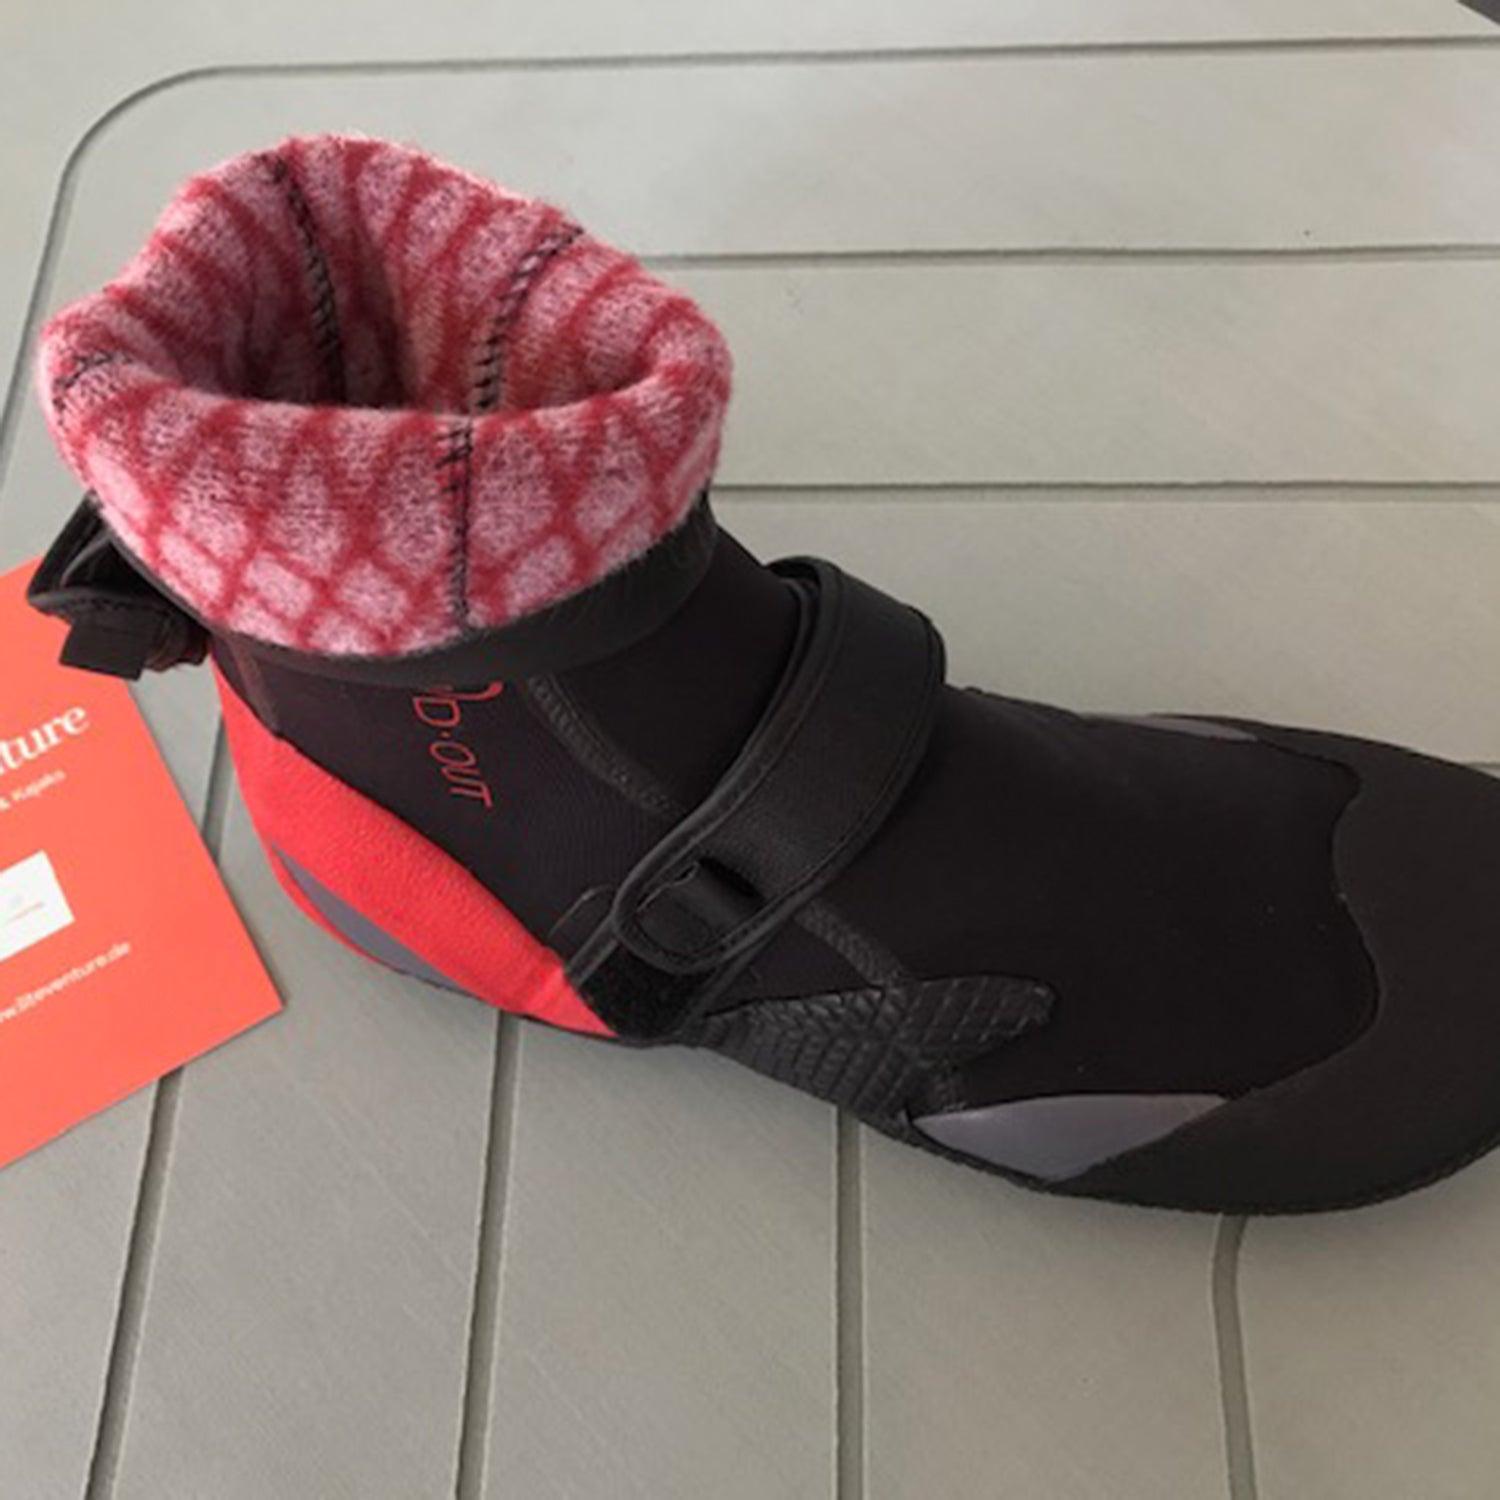 Produktbild von Bekleidung " Neoprenschuhe 7mm-Warm Feet " der Marke Stand Out für 70.00 €. Erhältlich online bei Lite Venture ( www.liteventure.de )